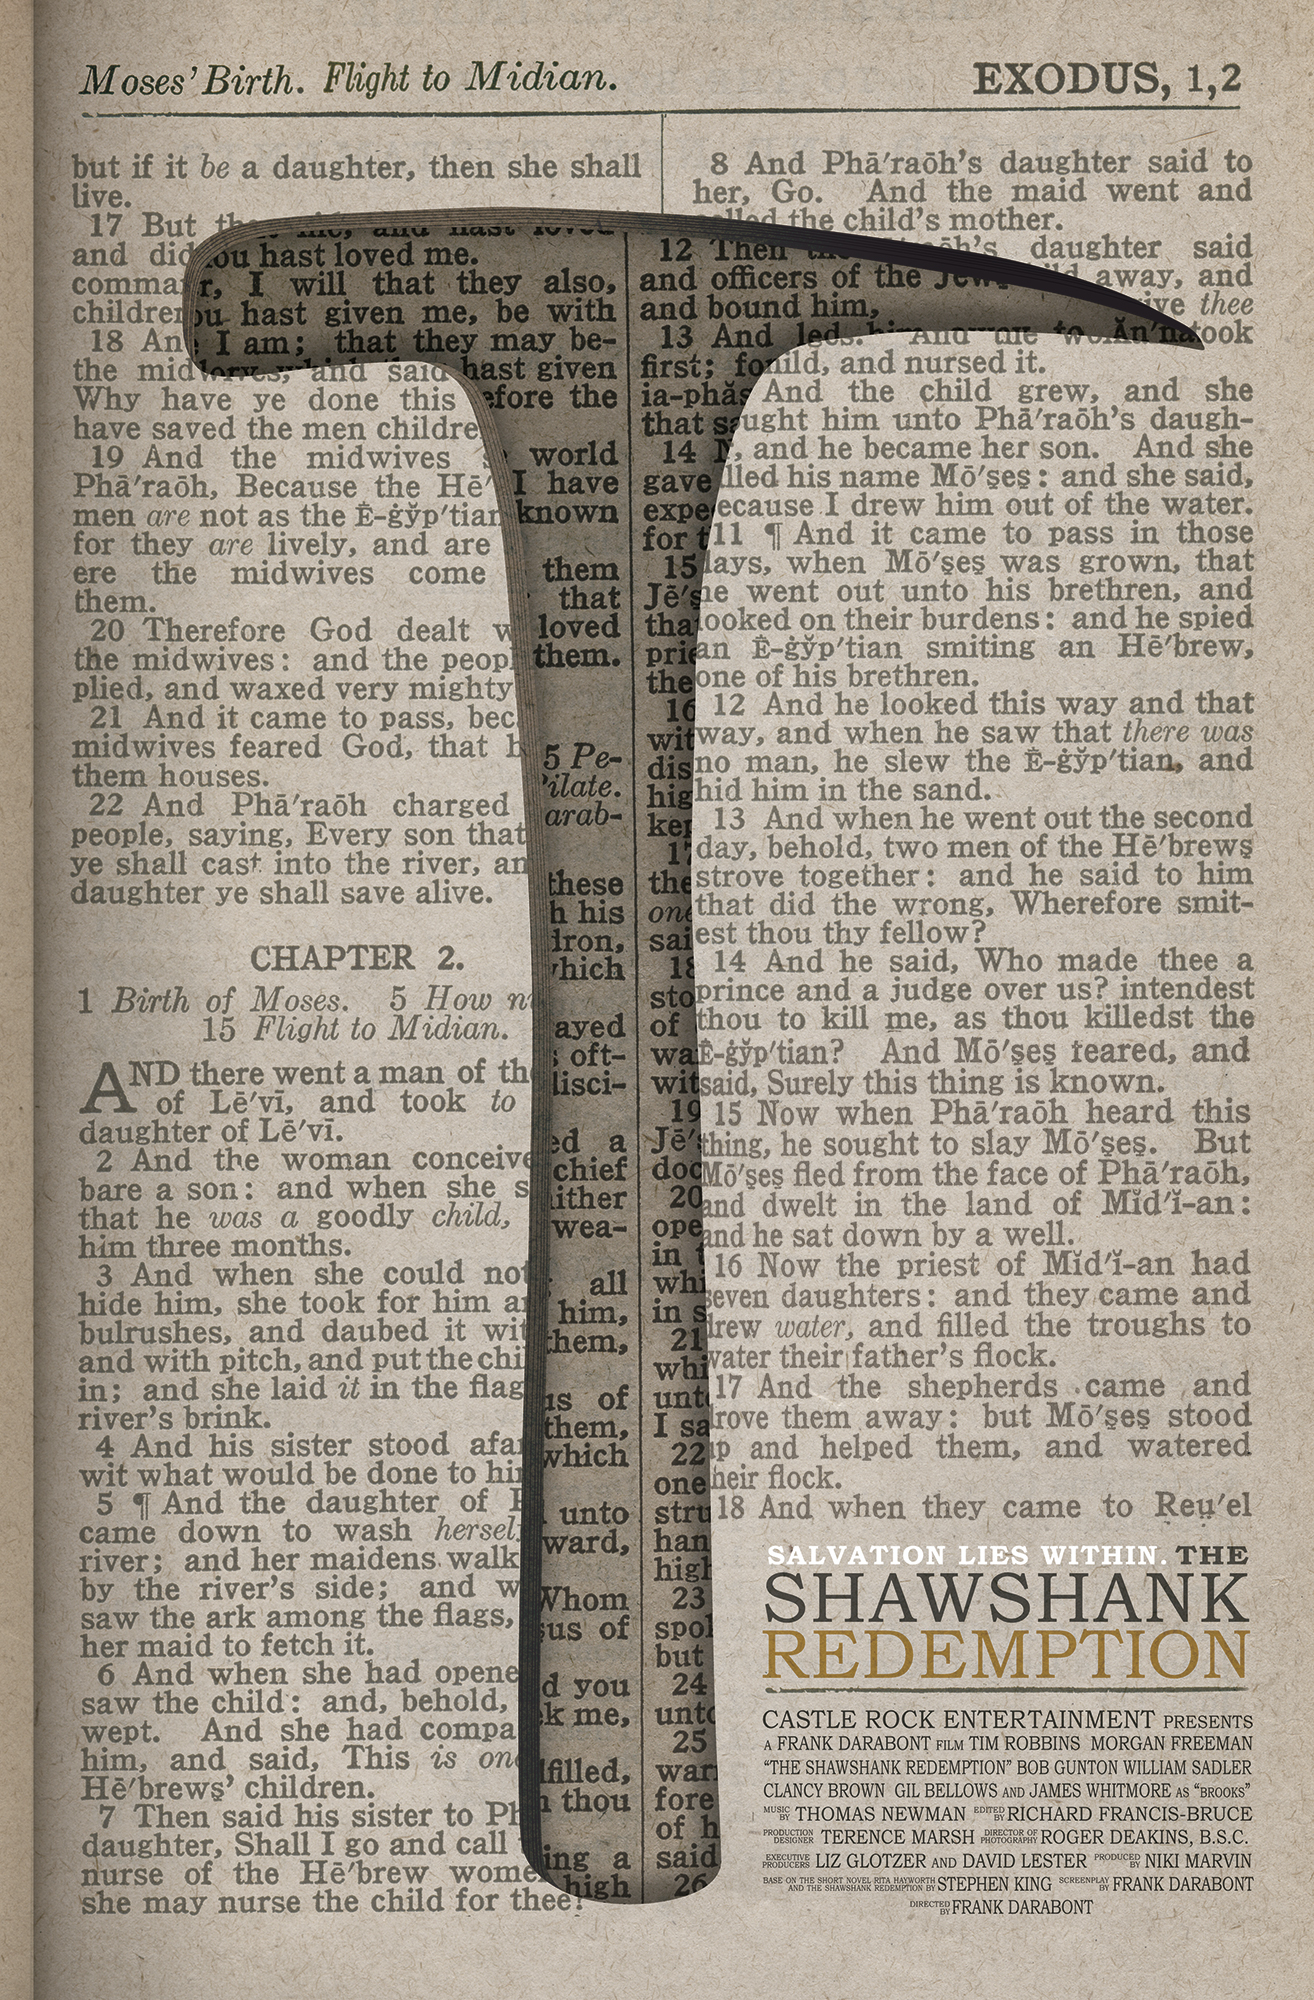 shawshank redemption novel